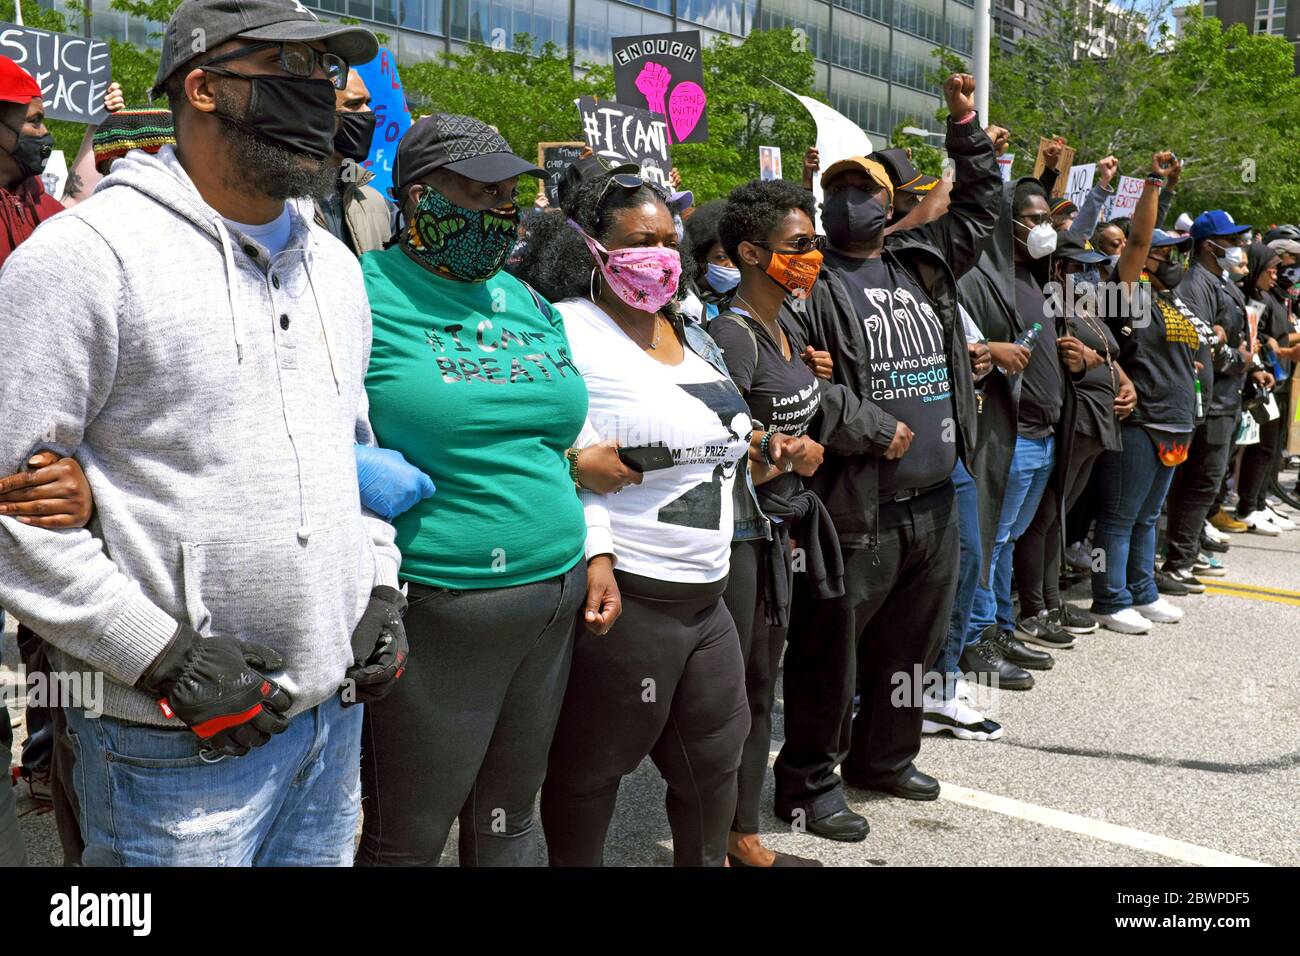 Las armas están encerradas mientras los manifestantes en el movimiento Black Lives Matter se preparan para marchar por Lakeside Avenue en Cleveland, Ohio, EE.UU. Foto de stock